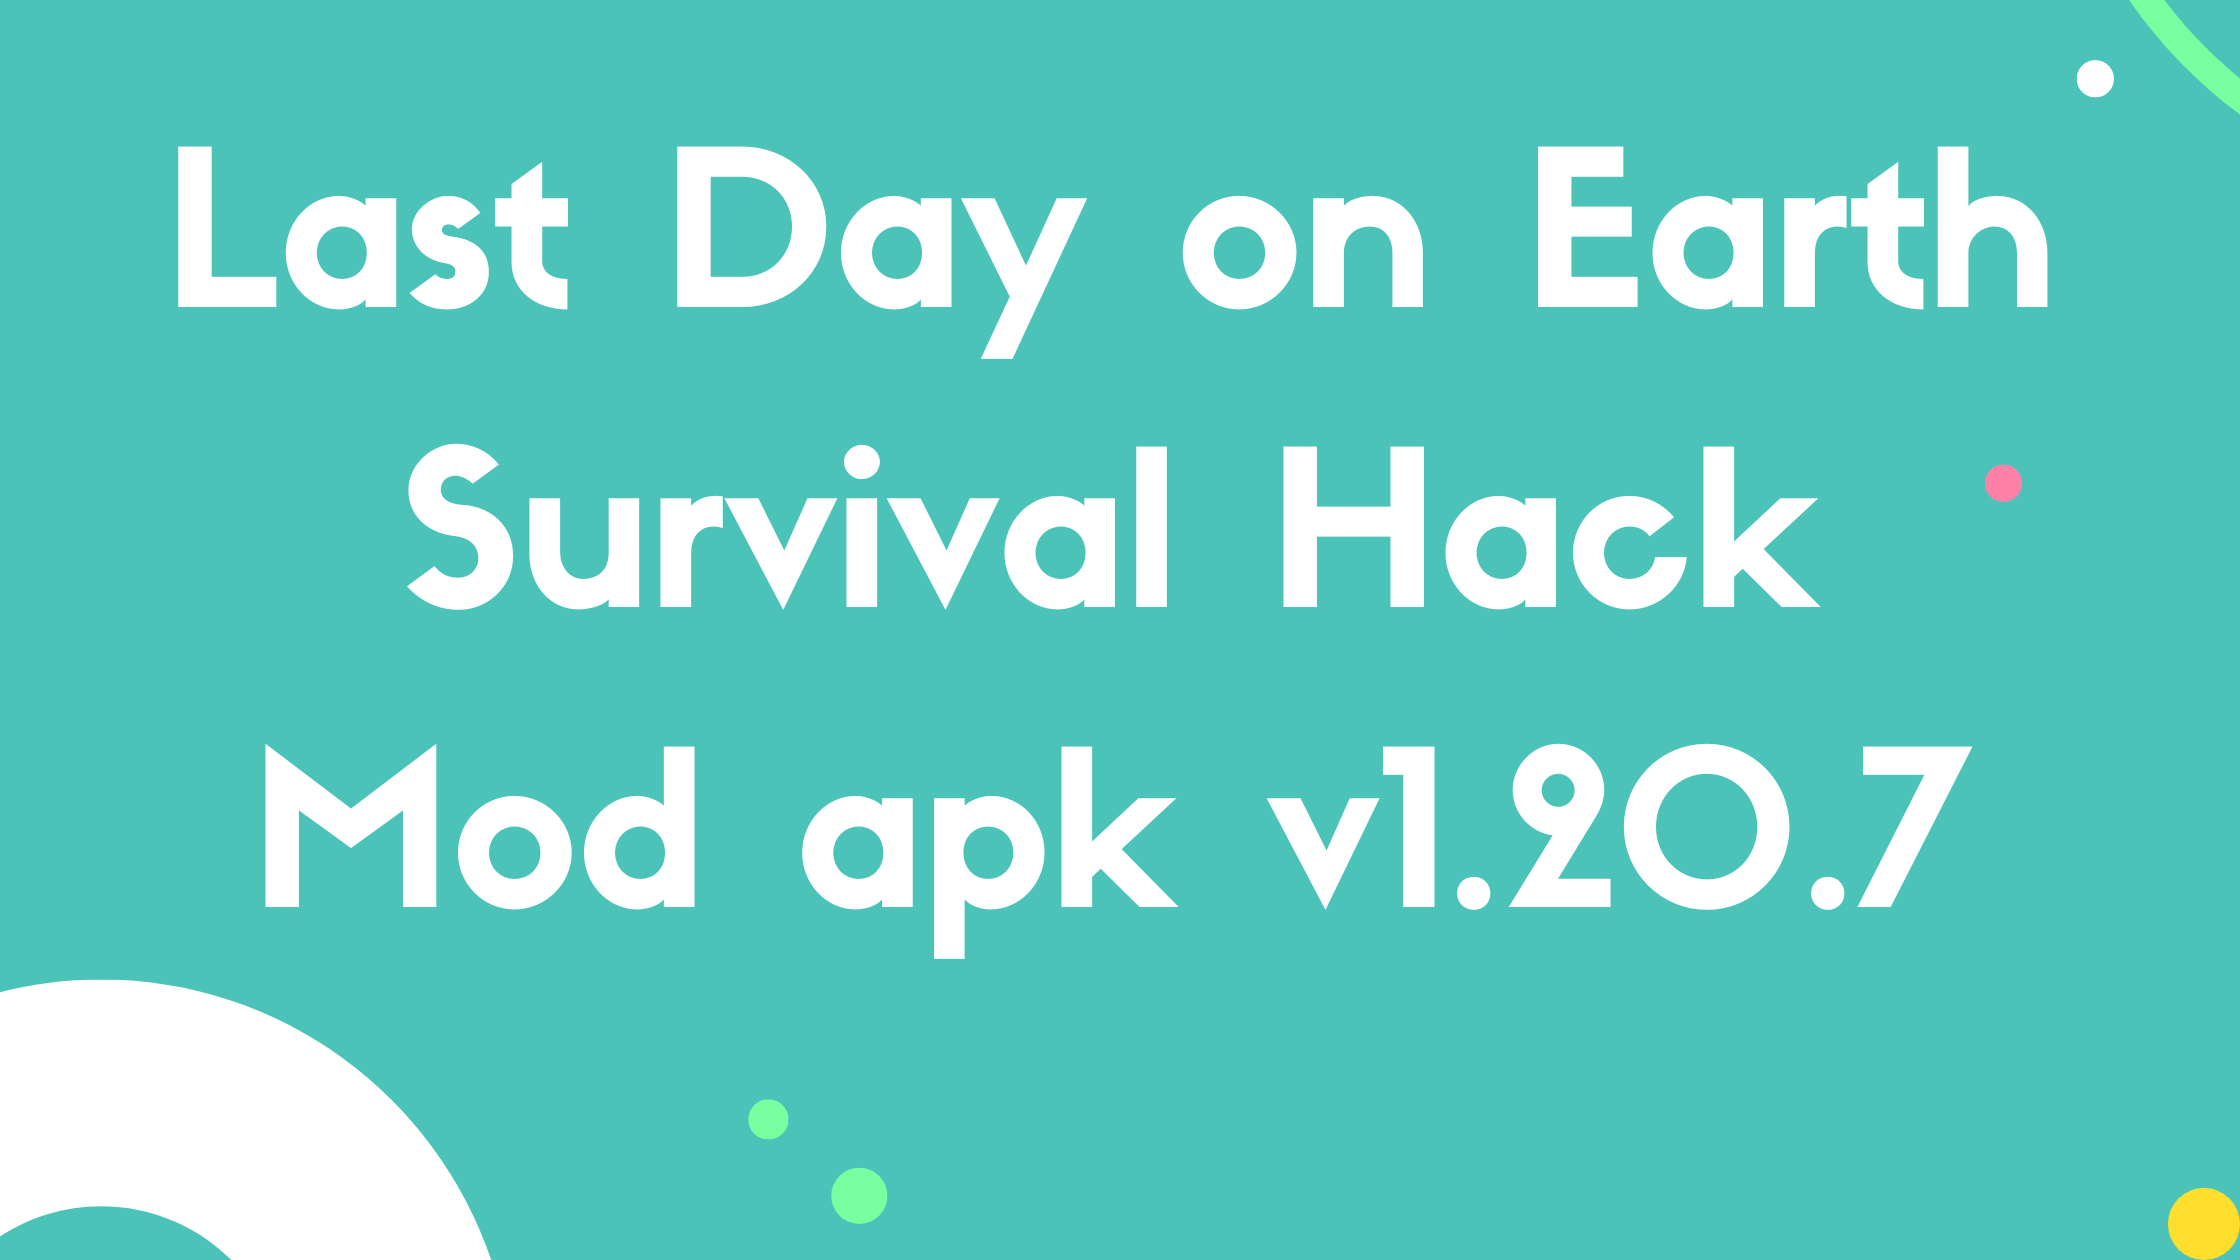 Last Day on Earth Survival Hack Mod apk v1.20.7